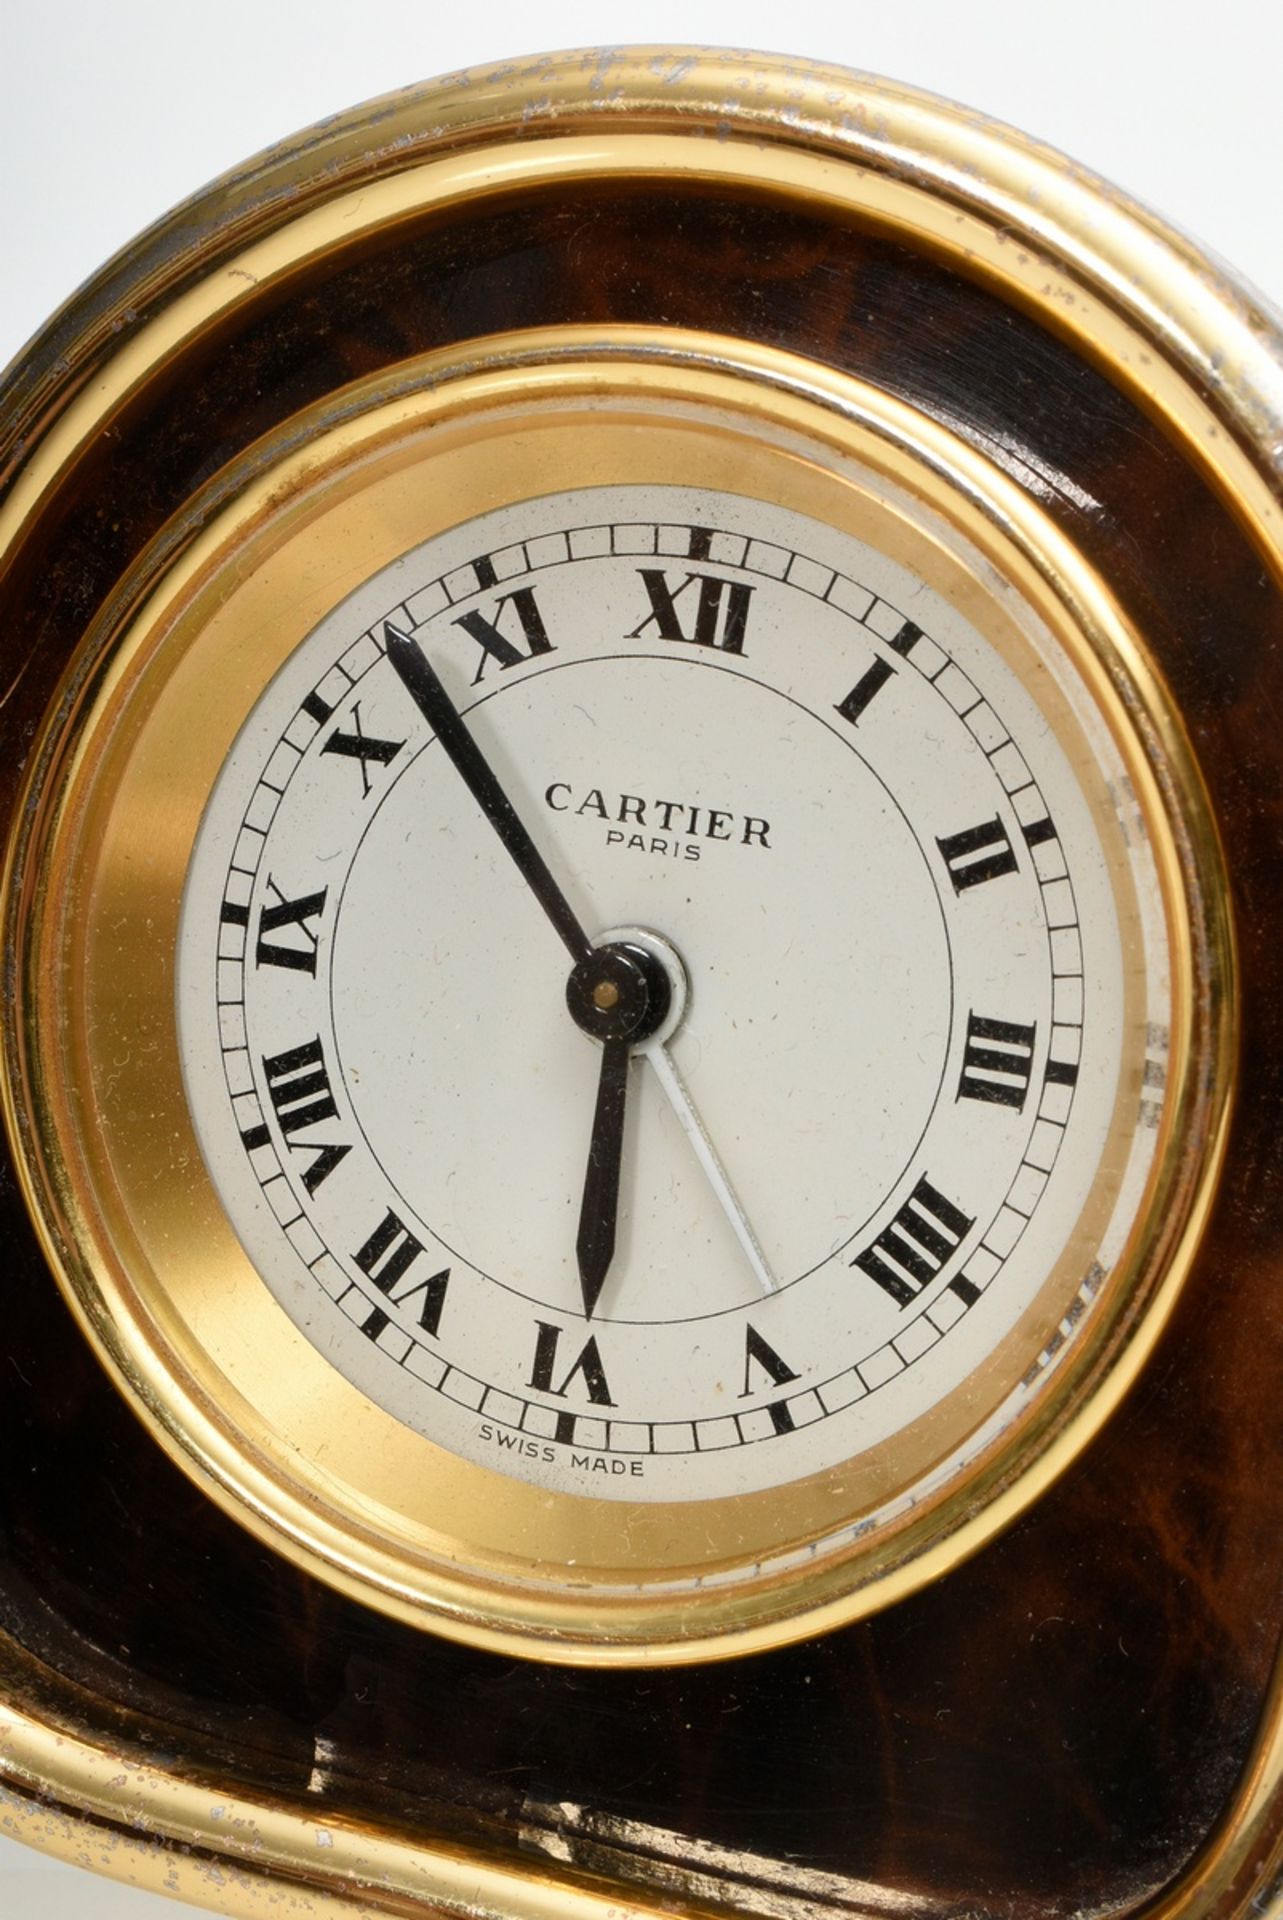 2 Diverse Teile Cartier: Reisewecker mit mechanischem Uhrwerk, braune Umrandung, Referenz Nr. 7504  - Bild 3 aus 5